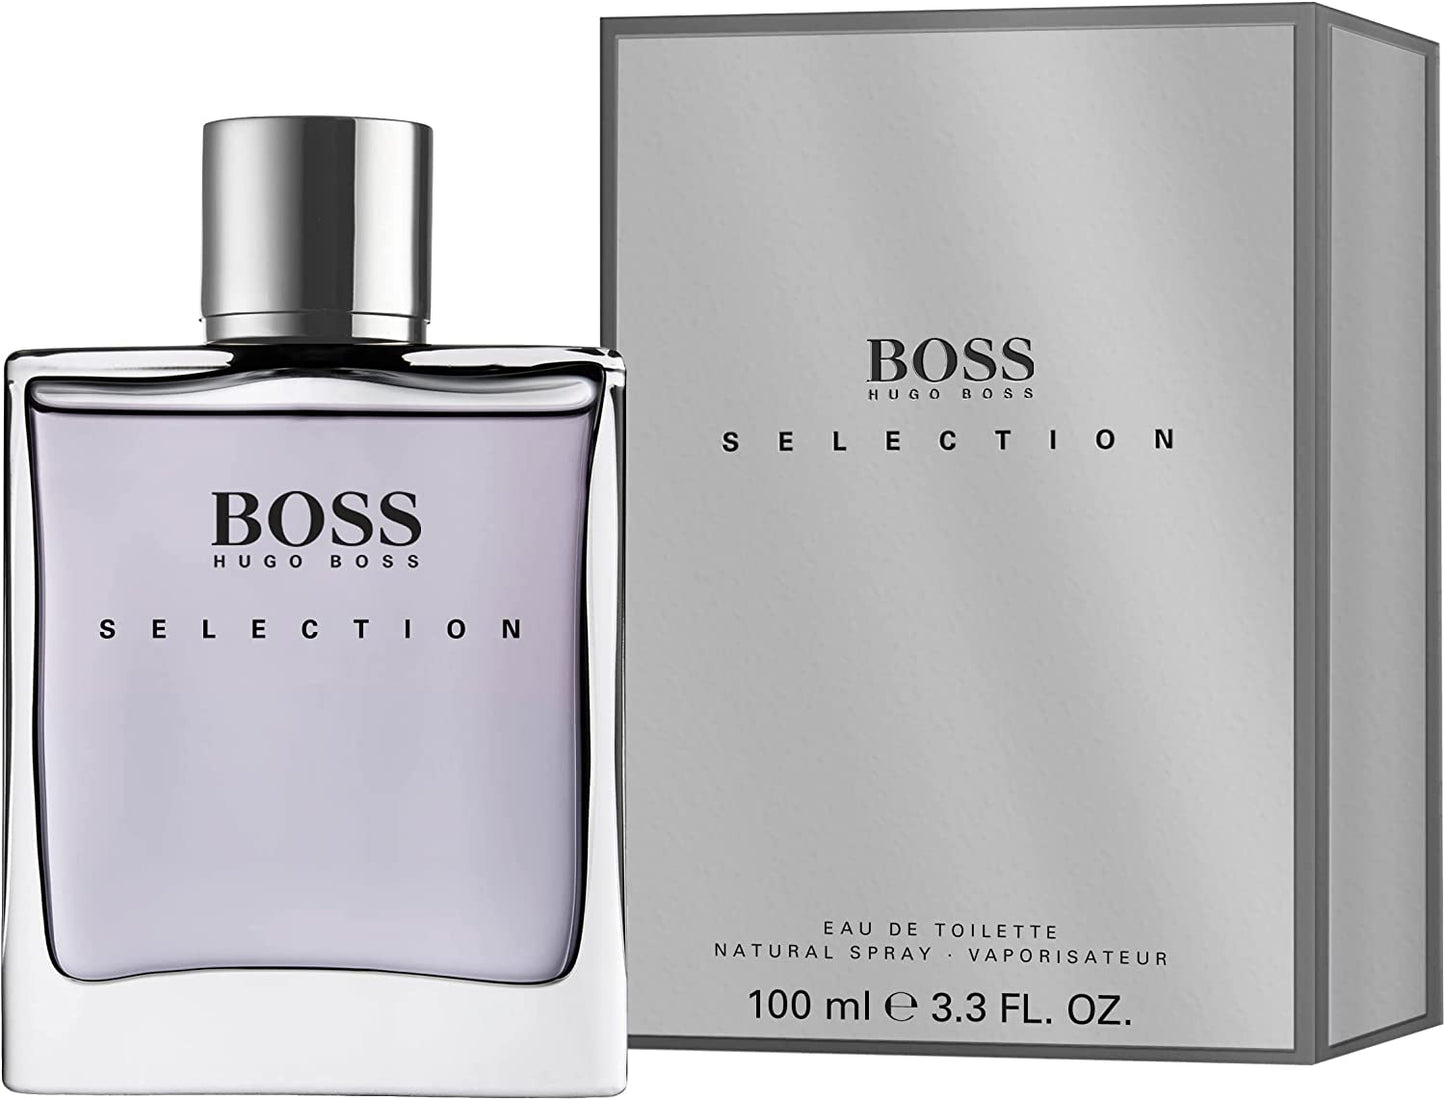 Perfume para Hombre HUGO BOSS SELECTION 100ml EDT